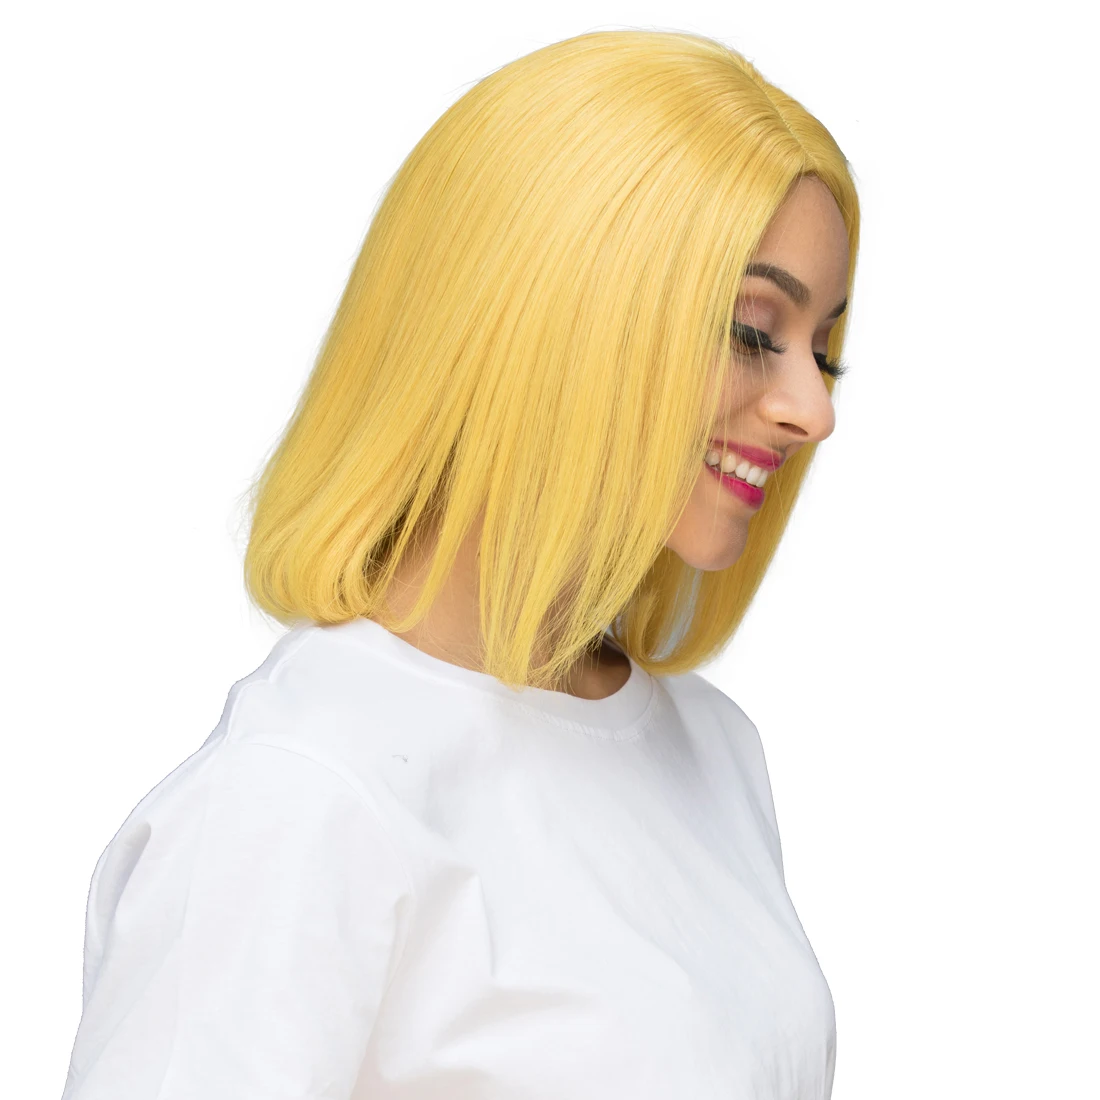 Pelucas de cabello humano Bob de color amarillo real de jengibre de Lsy Hair, pelucas de cabello humano virgen con frente de encaje corto recto sin cola para Sale.jpg